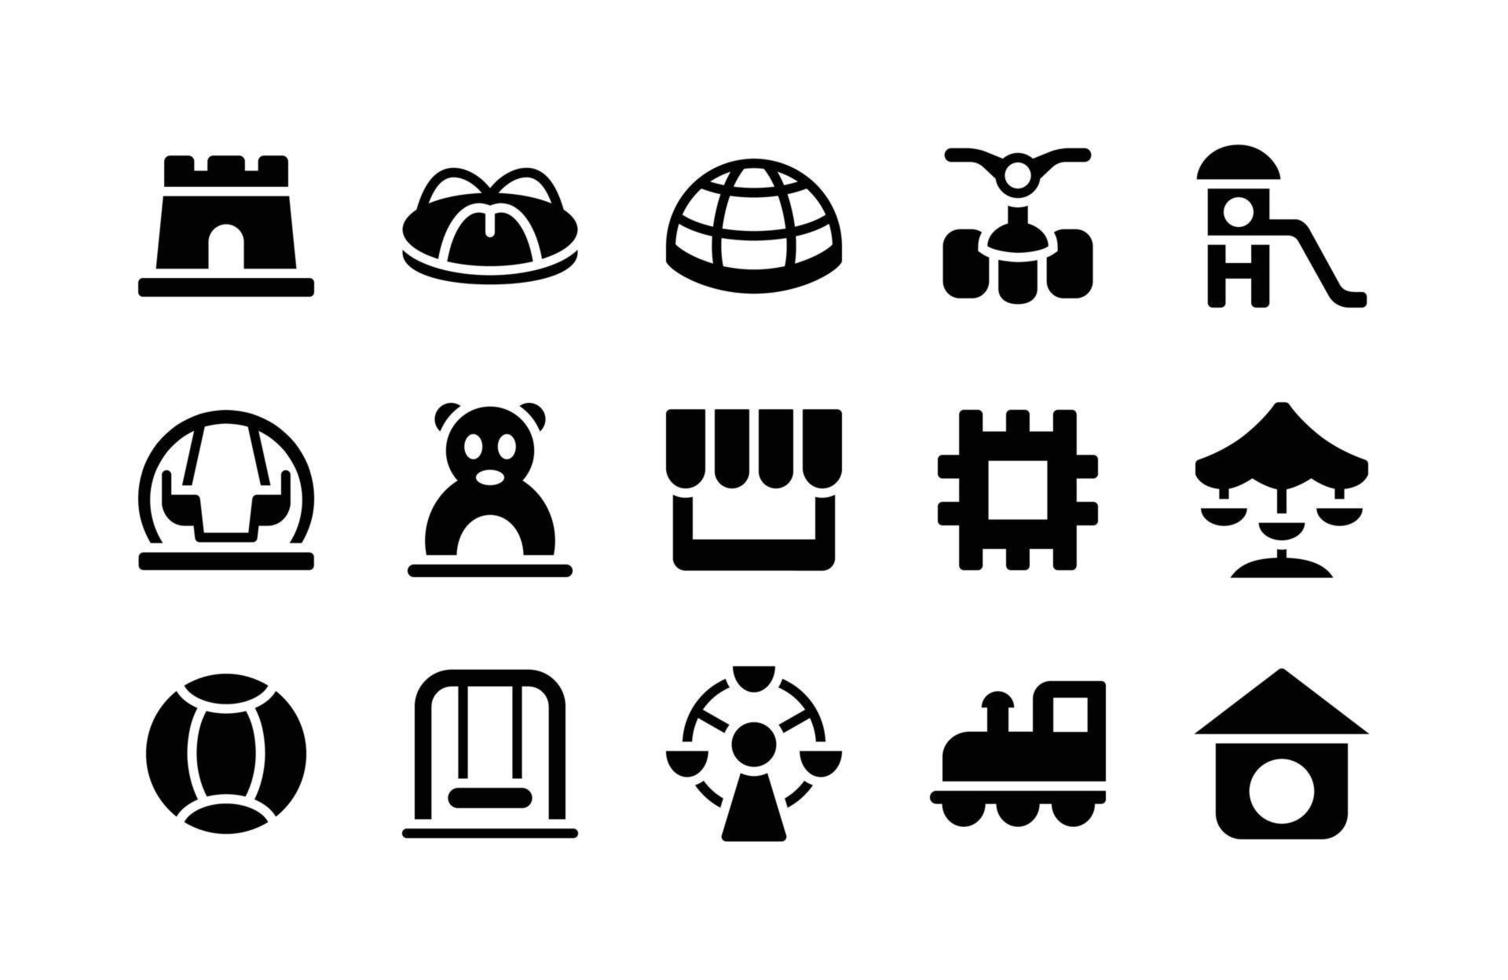 speeltuin glyph-pictogrammen, waaronder kasteel, carrousel, koepel, fiets, glijbaan, schommel, poort, winkel, puzzel, carrousel, bal, schommel, carrousel, trein, vogelhuisje vector